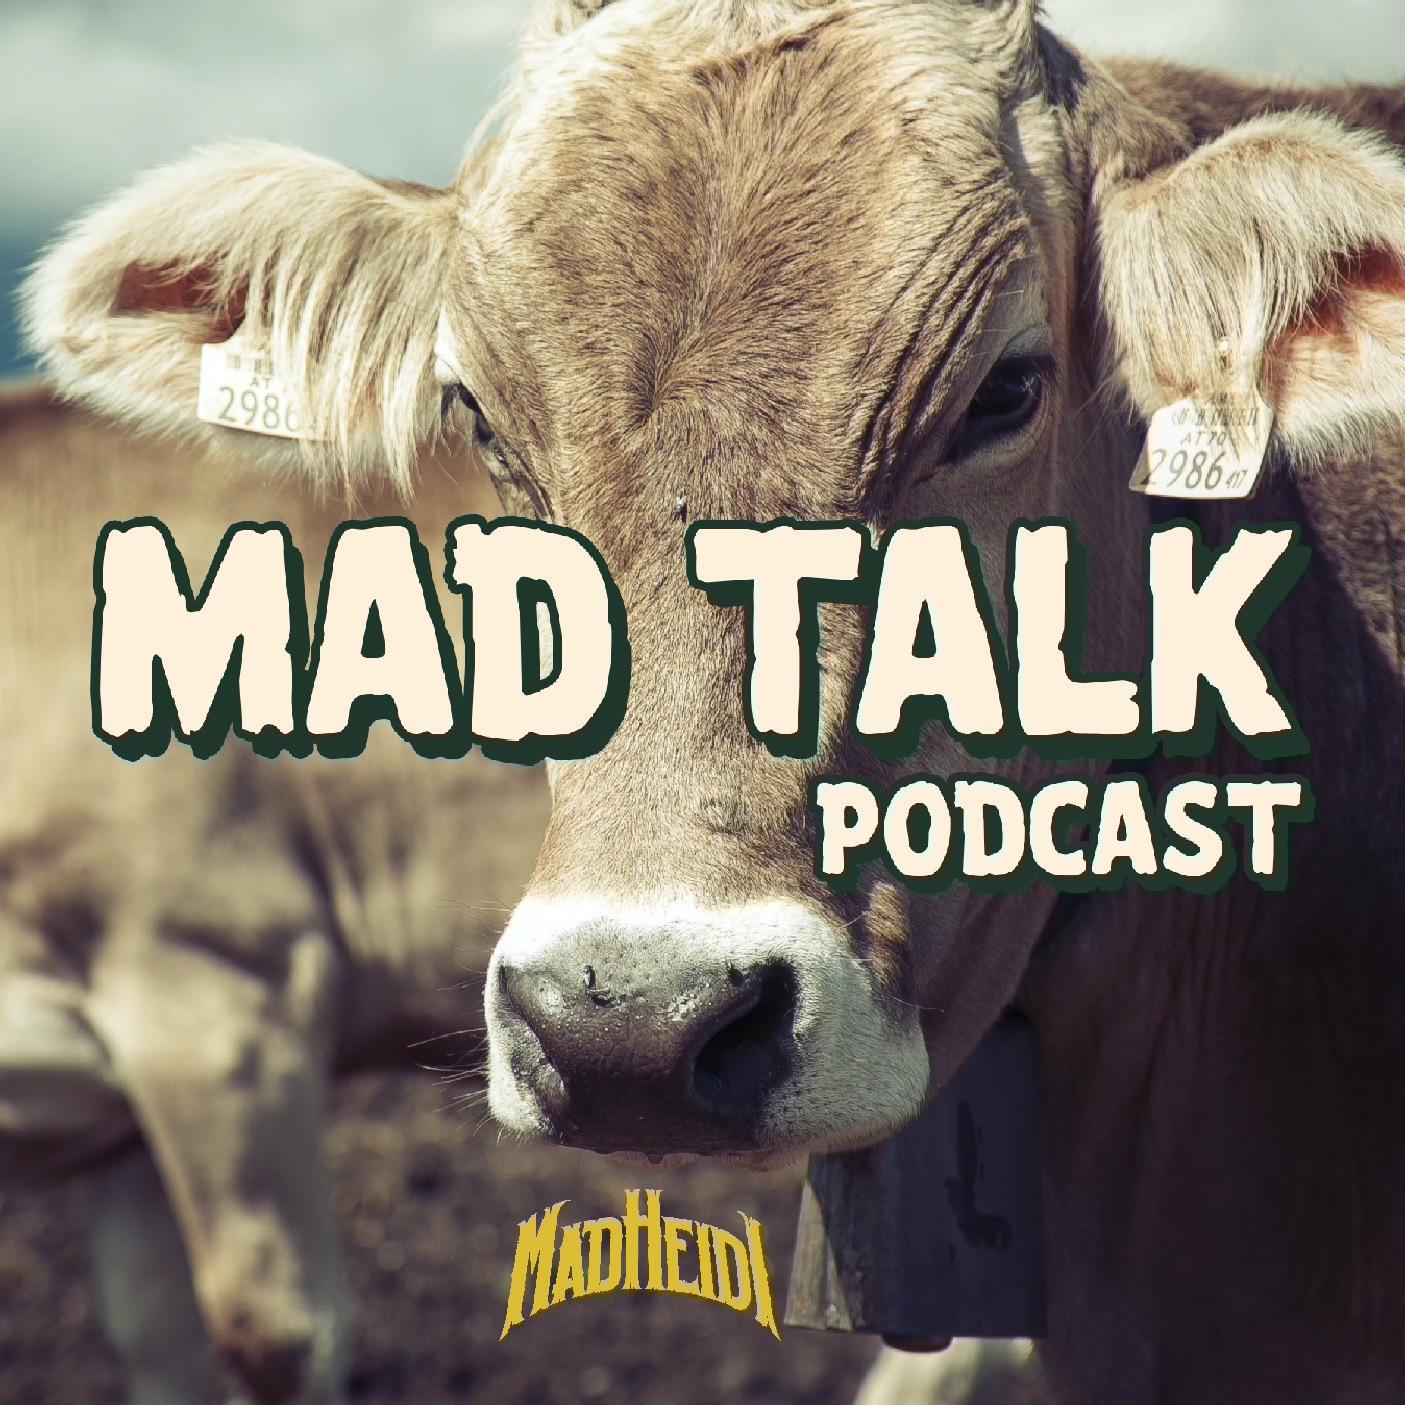 MAD HEIDI's Mad Talk Podcast